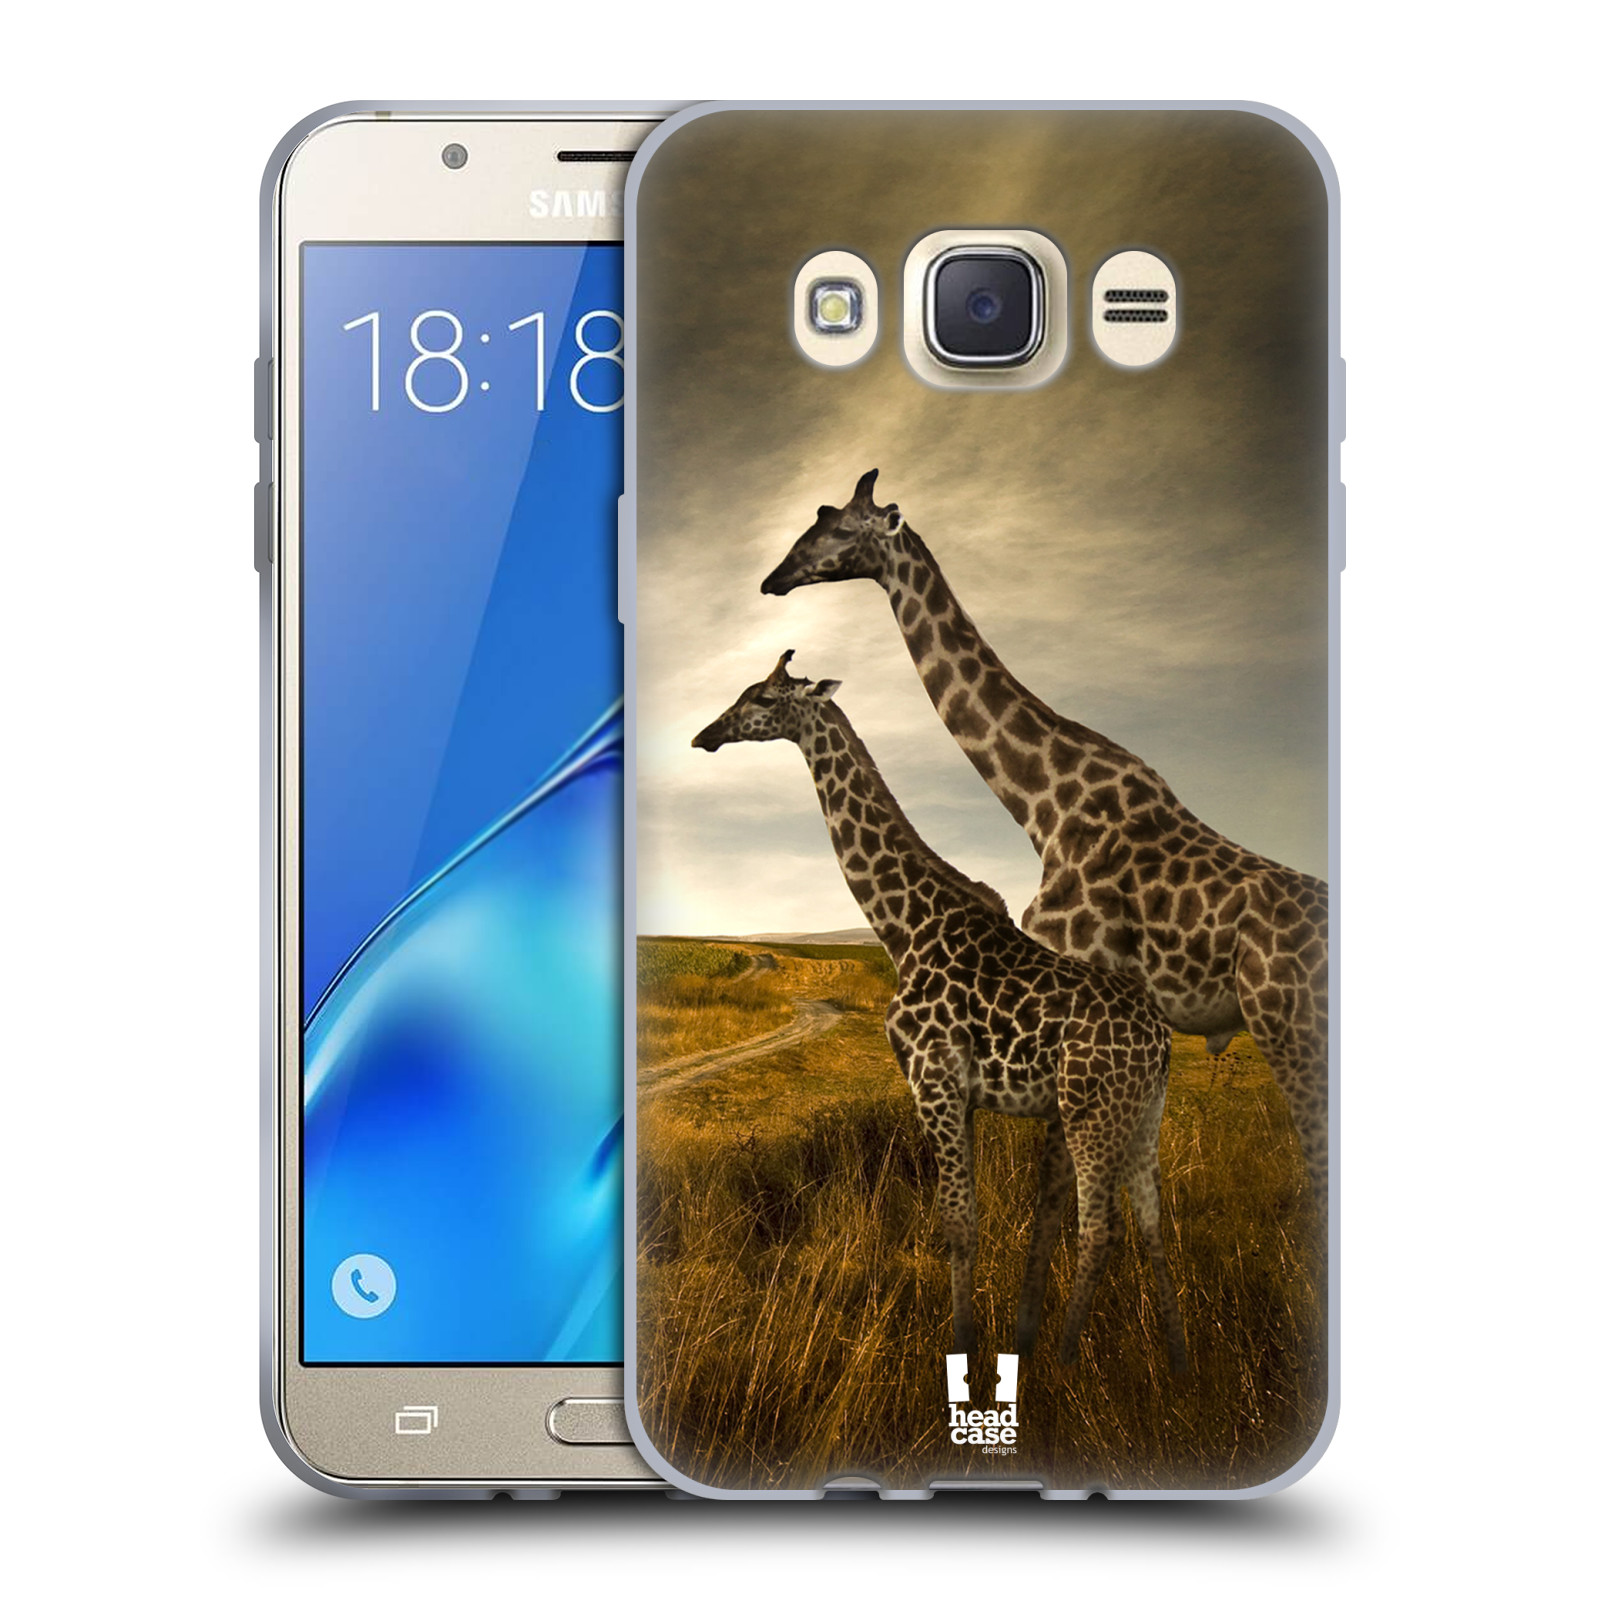 HEAD CASE silikonový obal, kryt na mobil Samsung Galaxy J7 2016 (J710, J710F) vzor Divočina, Divoký život a zvířata foto AFRIKA ŽIRAFY VÝHLED